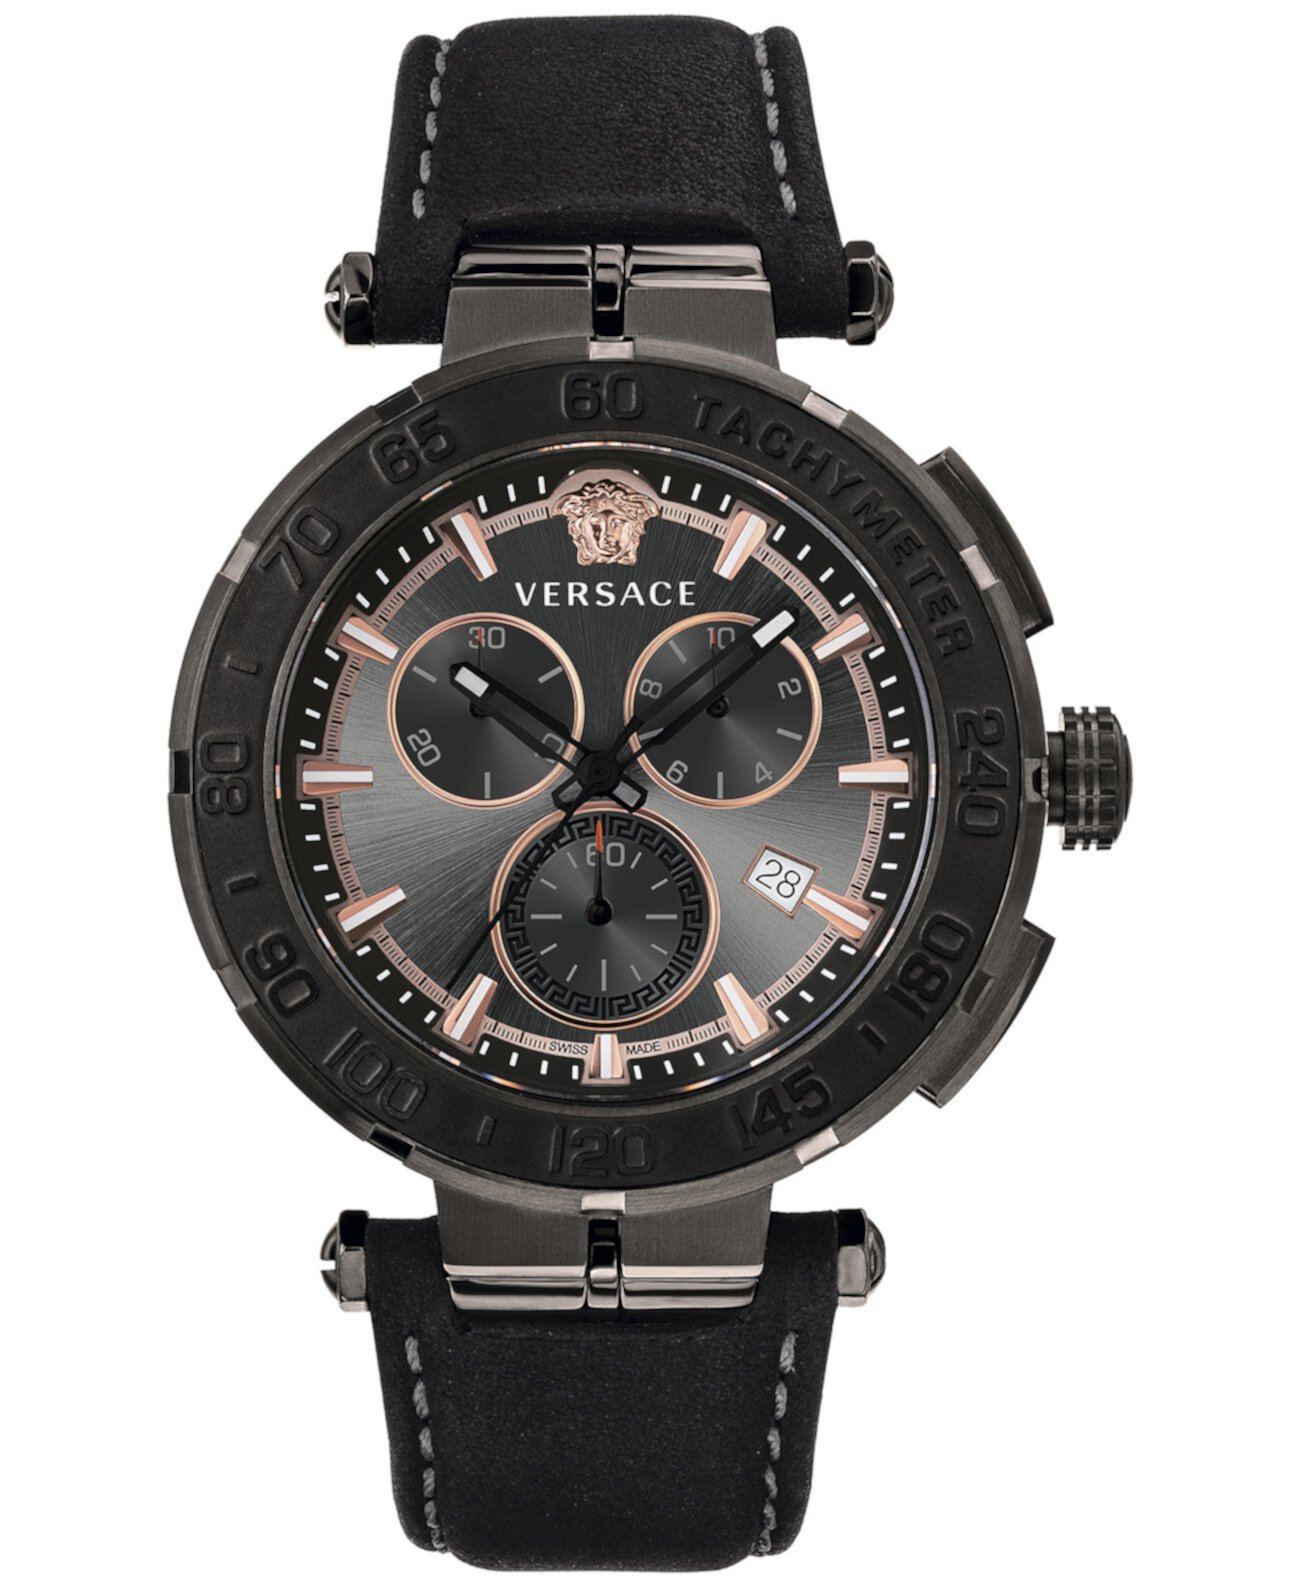 Мужские швейцарские часы с хронографом Greca с черным кожаным ремешком 45 мм Versace